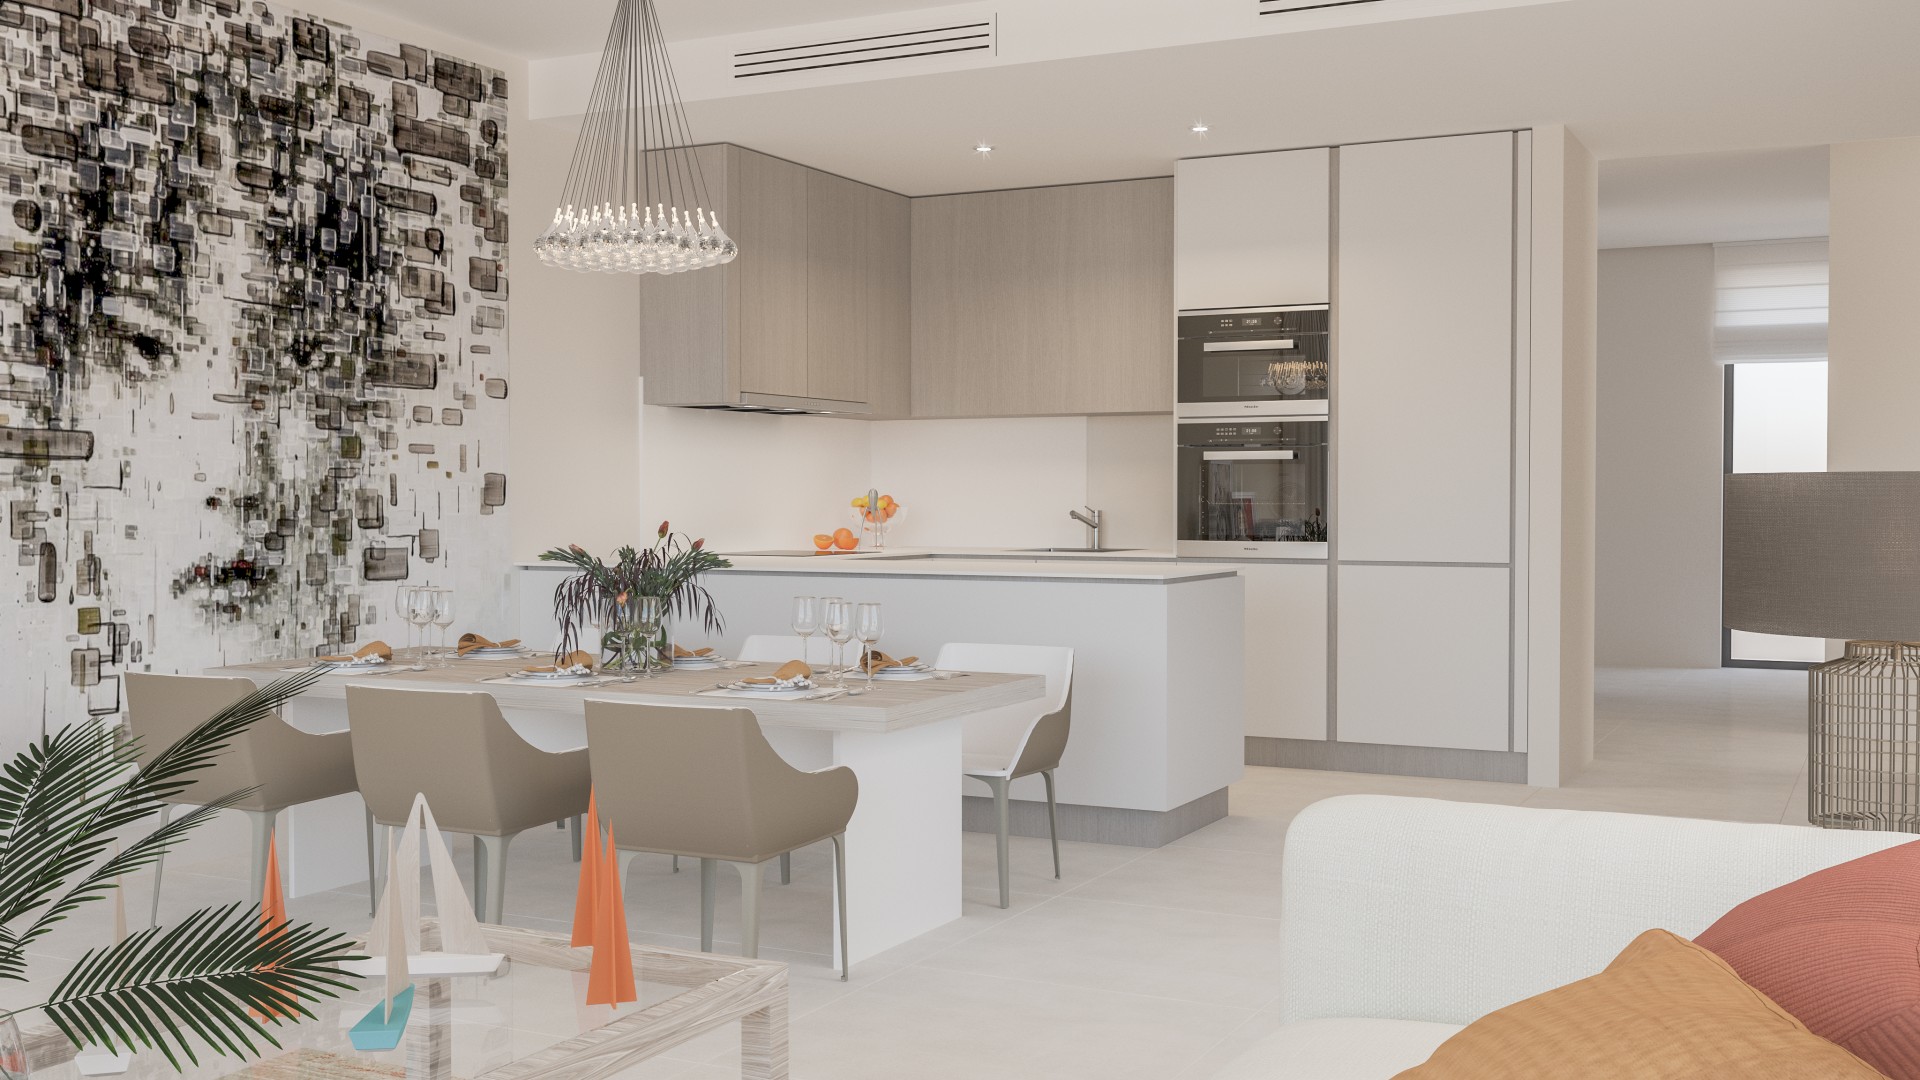 Nieuw project met moderne en exclusieve appartementen en penthouses in Estepona. PL76